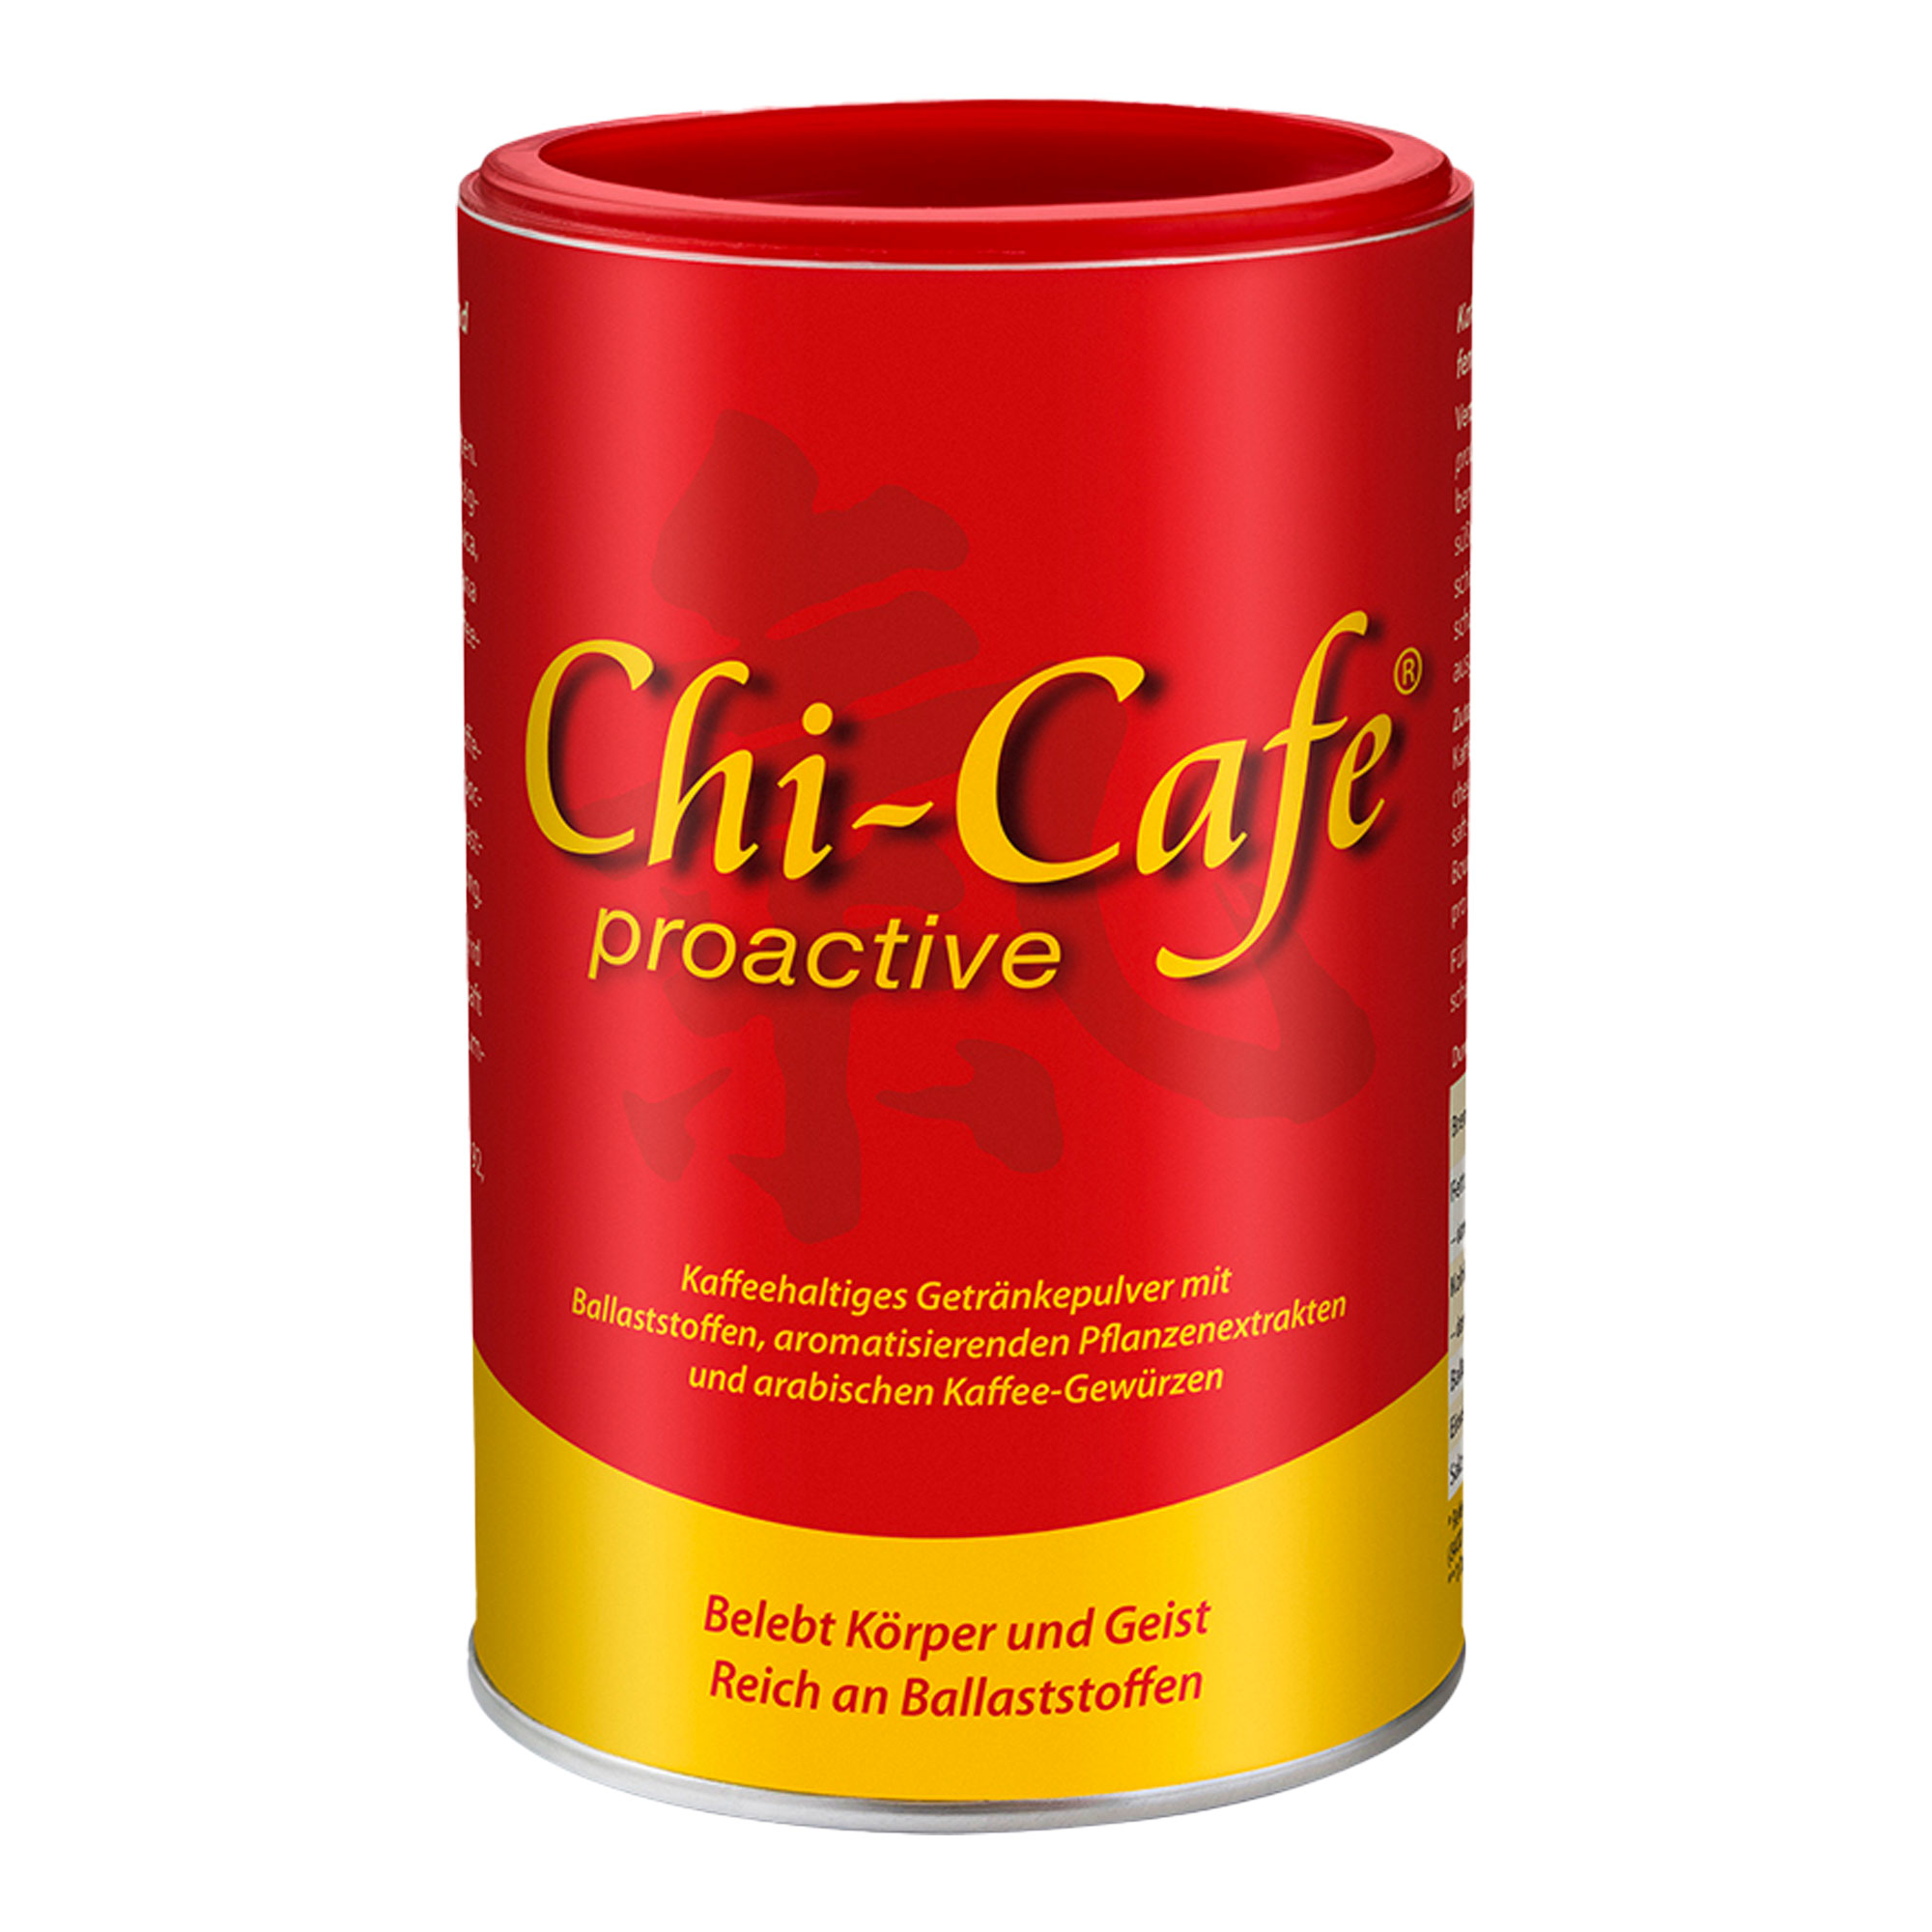 Ballaststoffreicher Kaffee mit wertvollen Pflanzenextrakten und arabischen Kaffee-Gewürzen wie Kardamon, Zimt und Nelken.